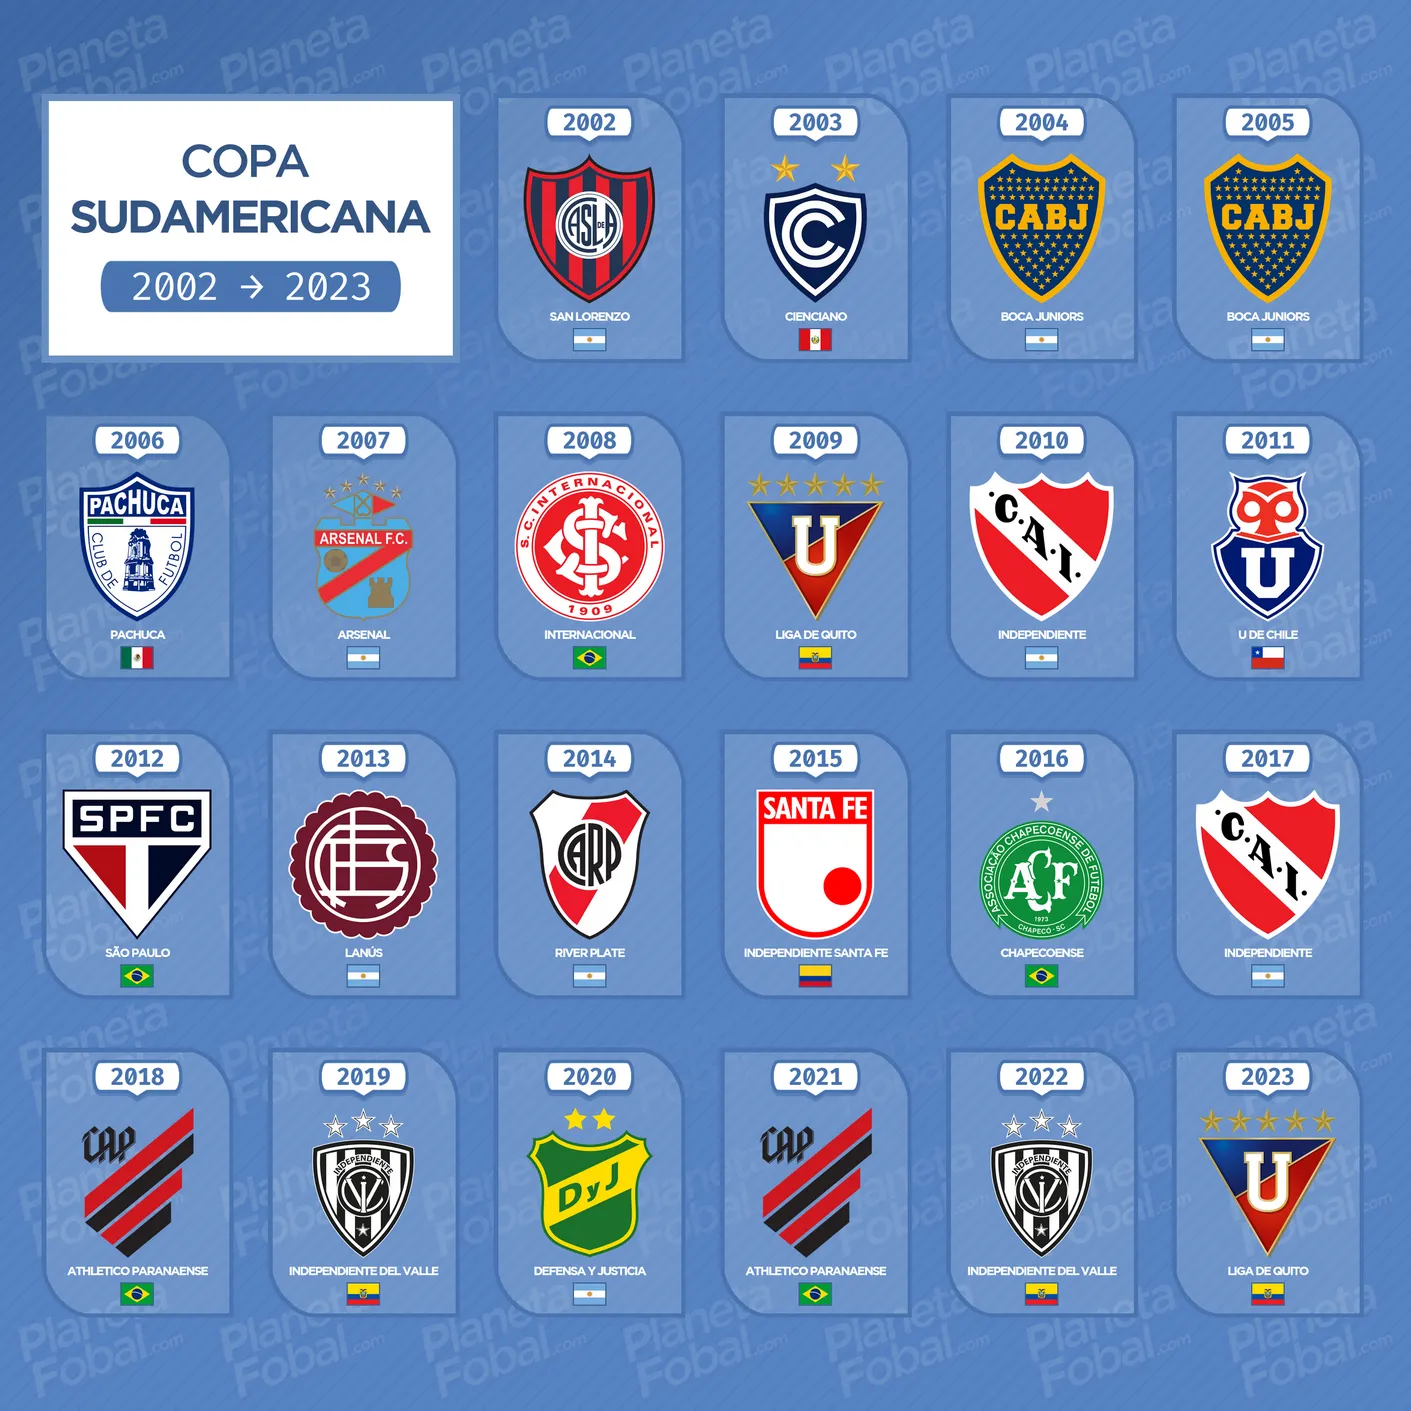 Campeones de la Copa Sudamericana 2002 → 2023